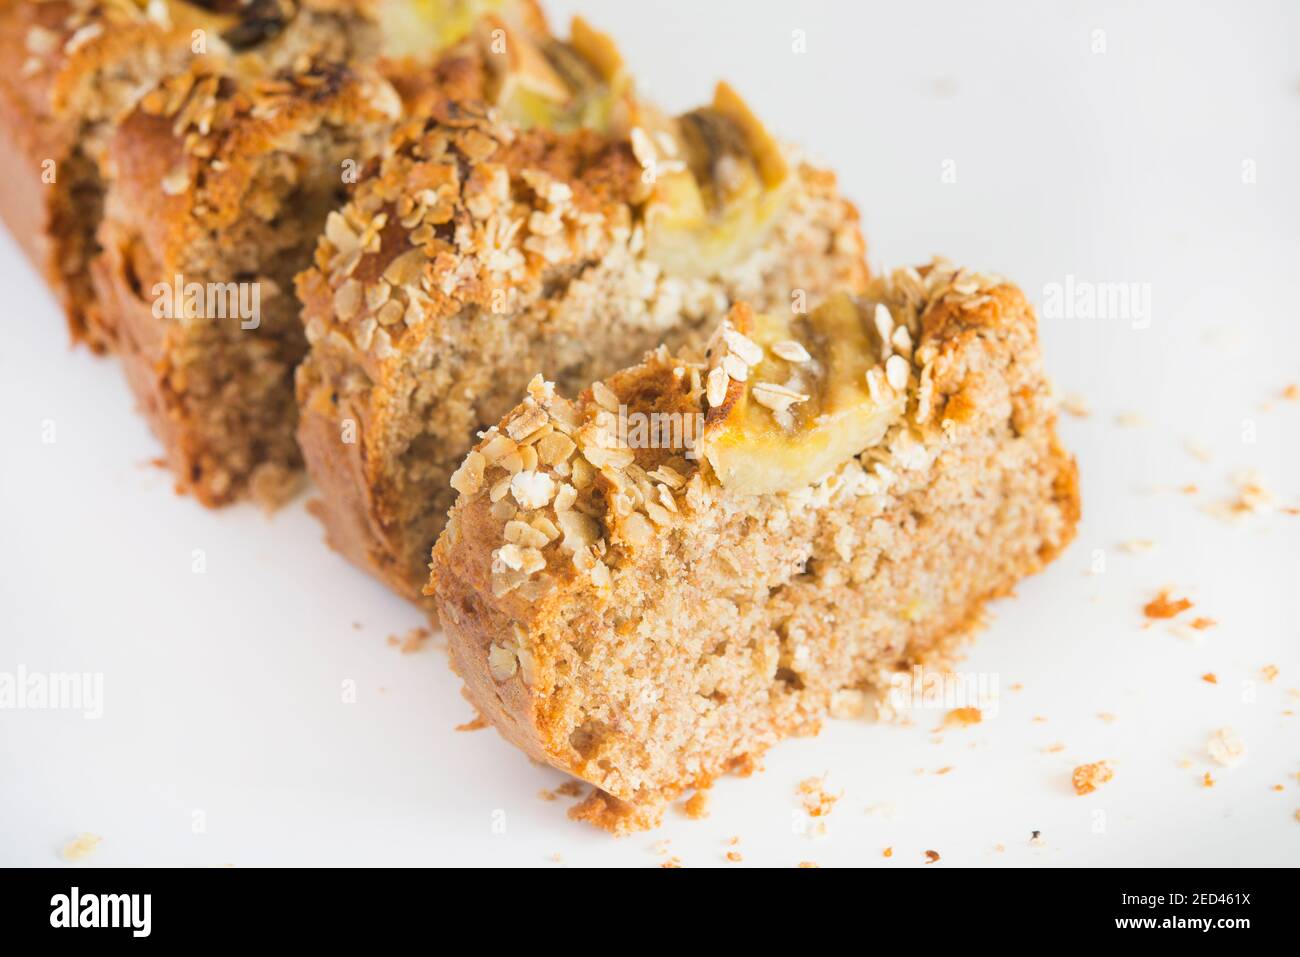 Banana bread with oats Stock Photo